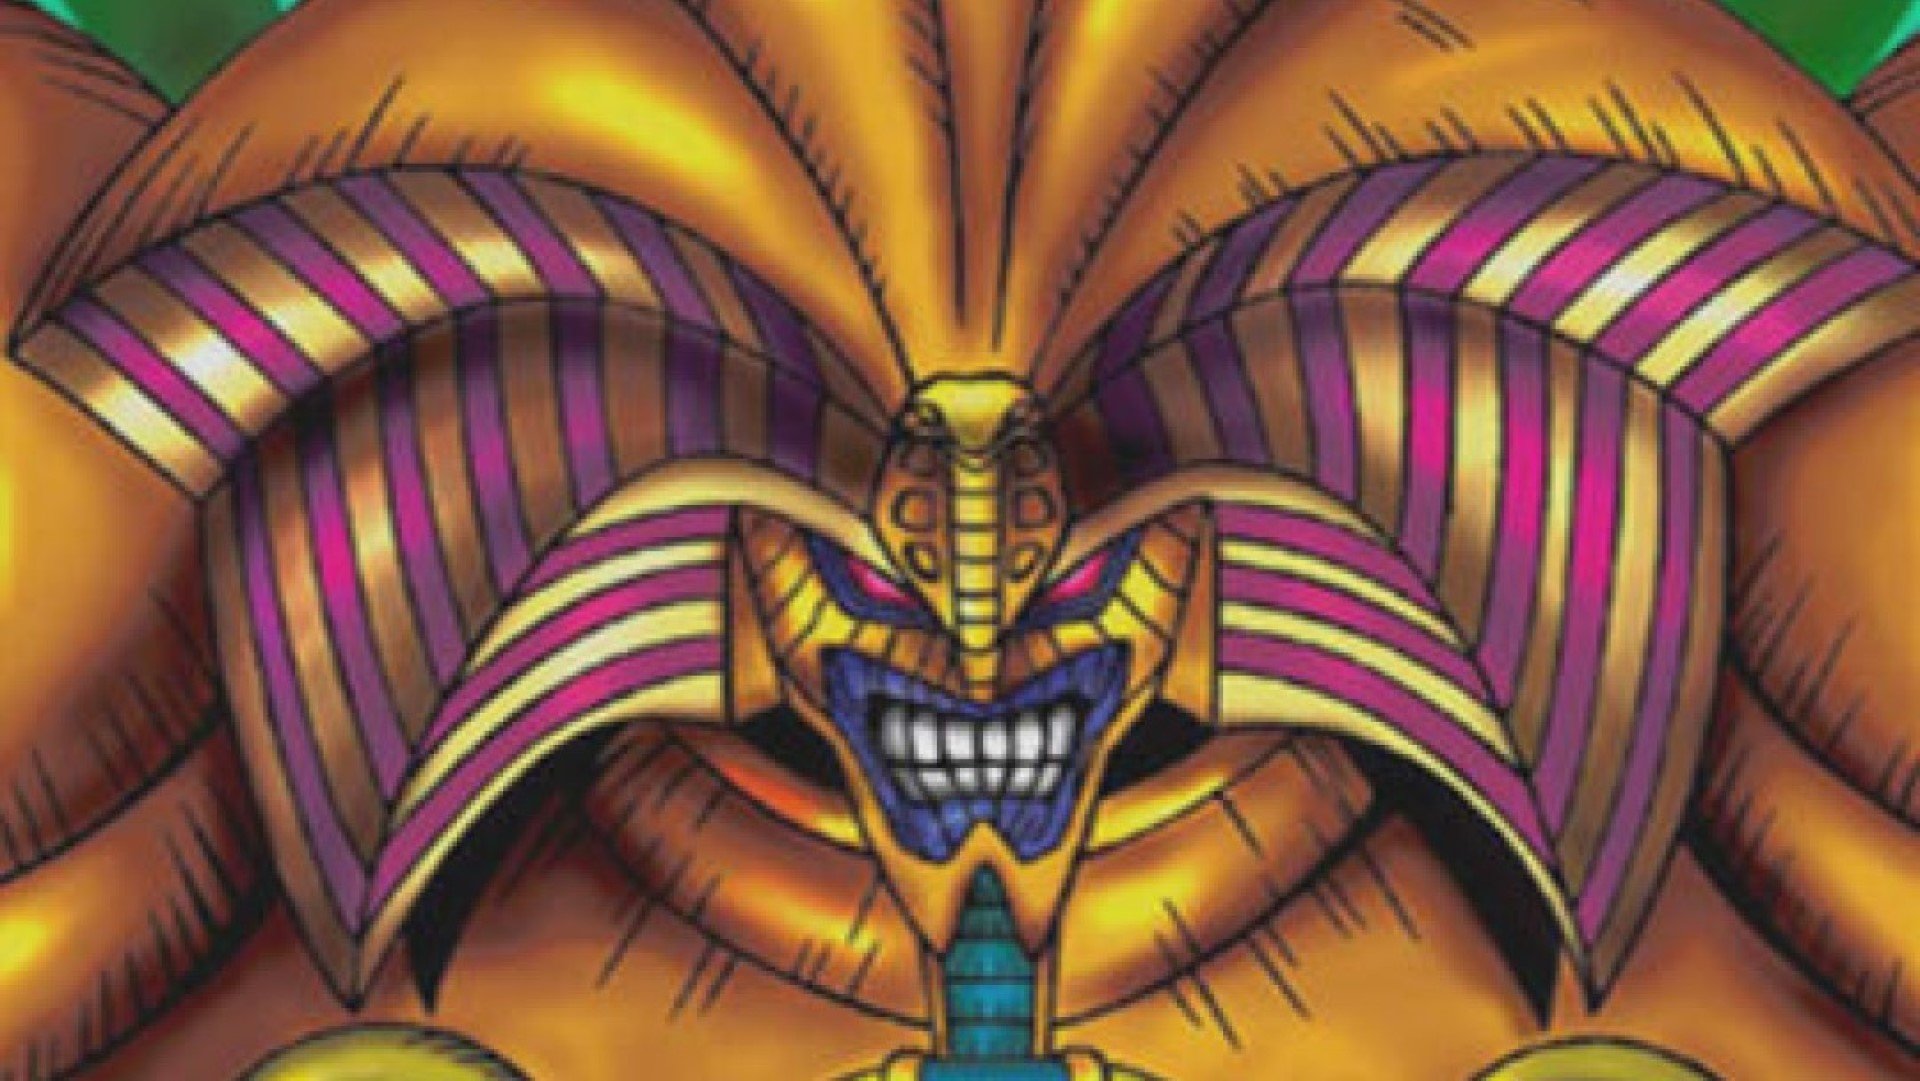 YuGiOh Master Duel banlist - Konami art of Exodia, the Forbidden One